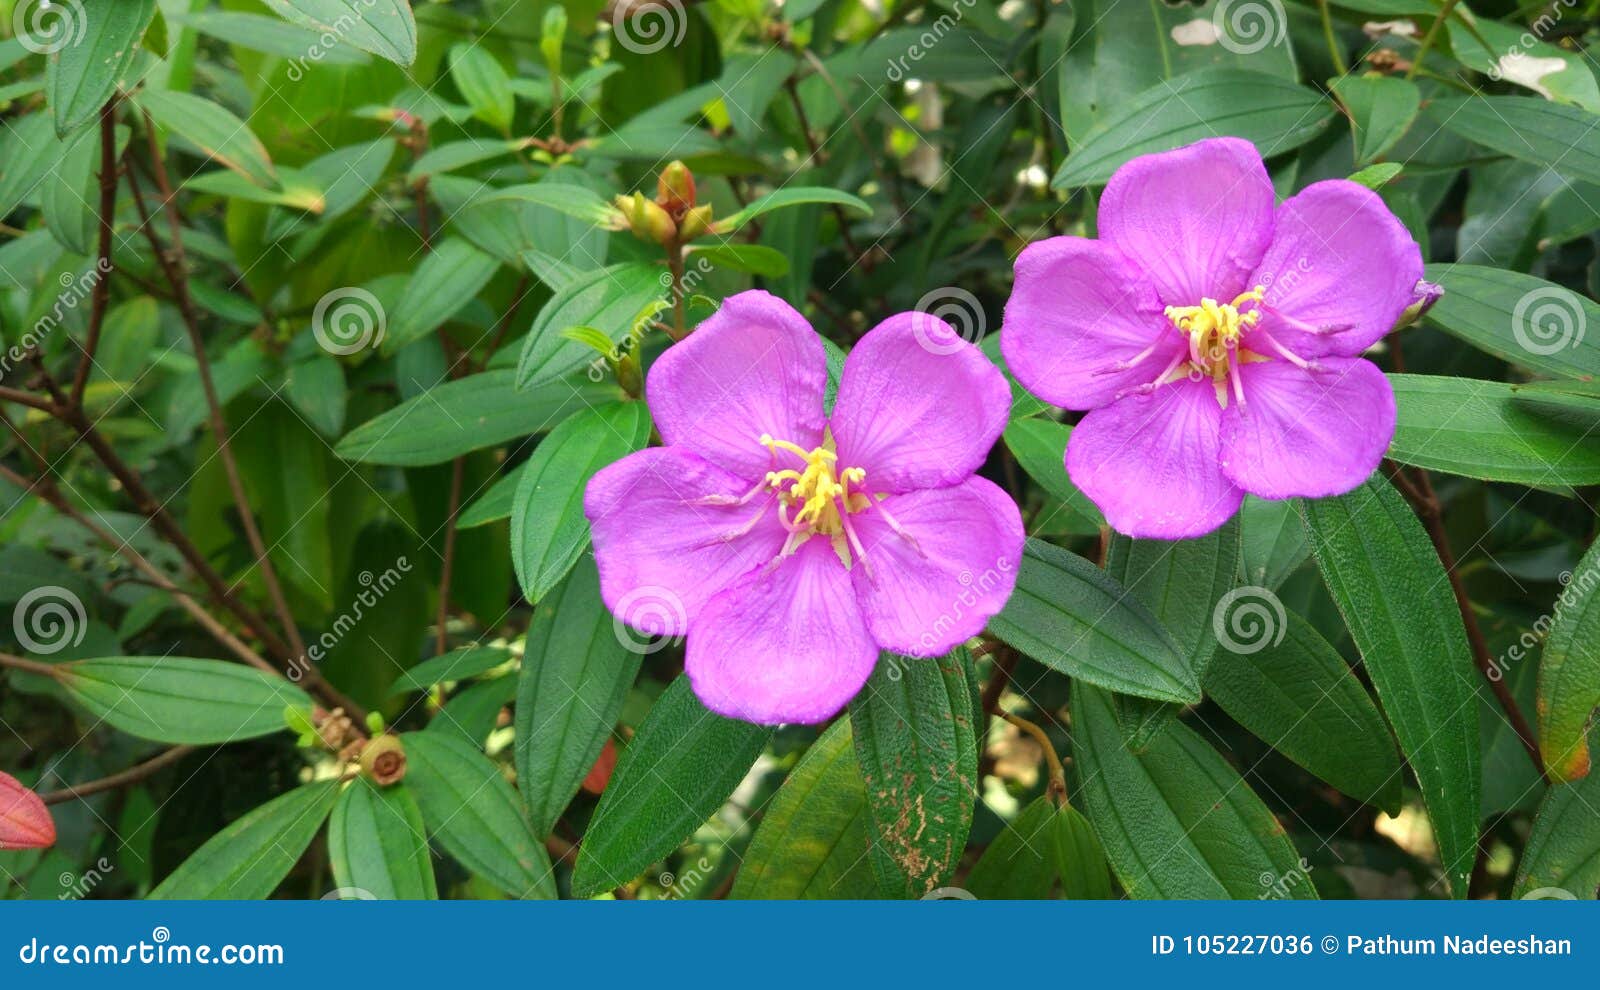 bovitiya flower of sri lanka